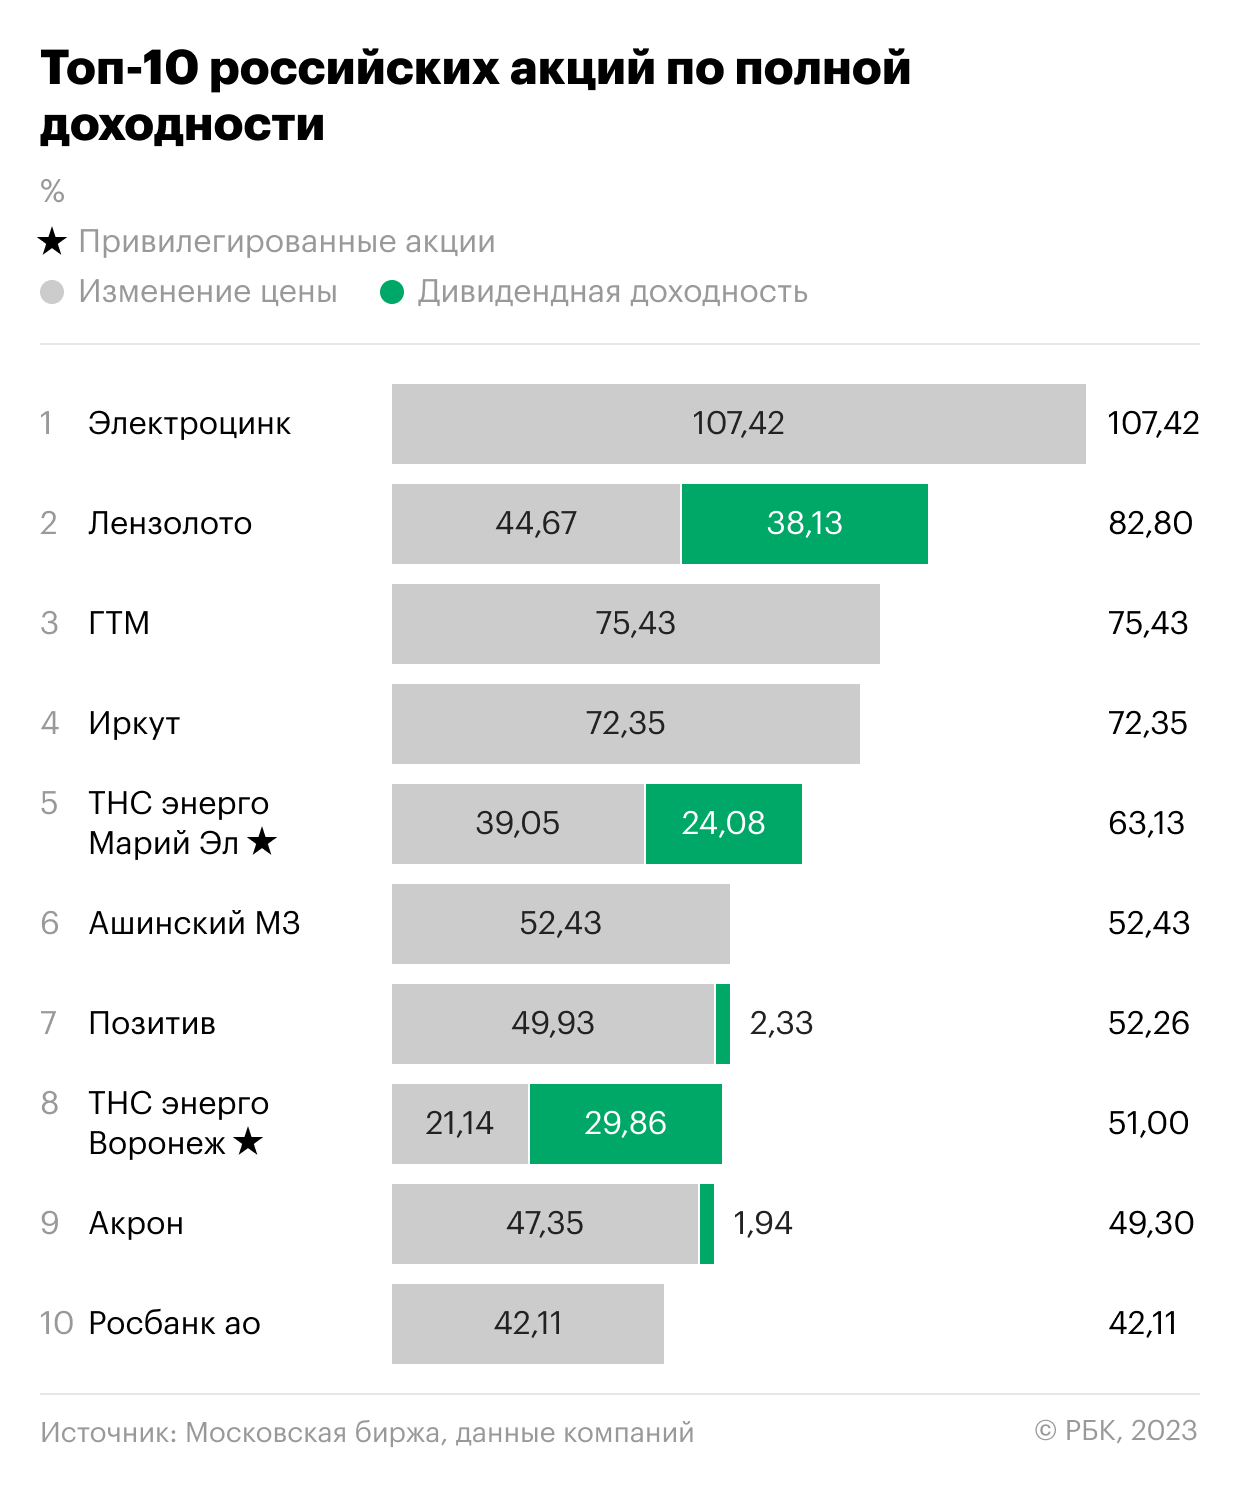 Десять российских акций с наибольшей полной доходностью за 2022 год